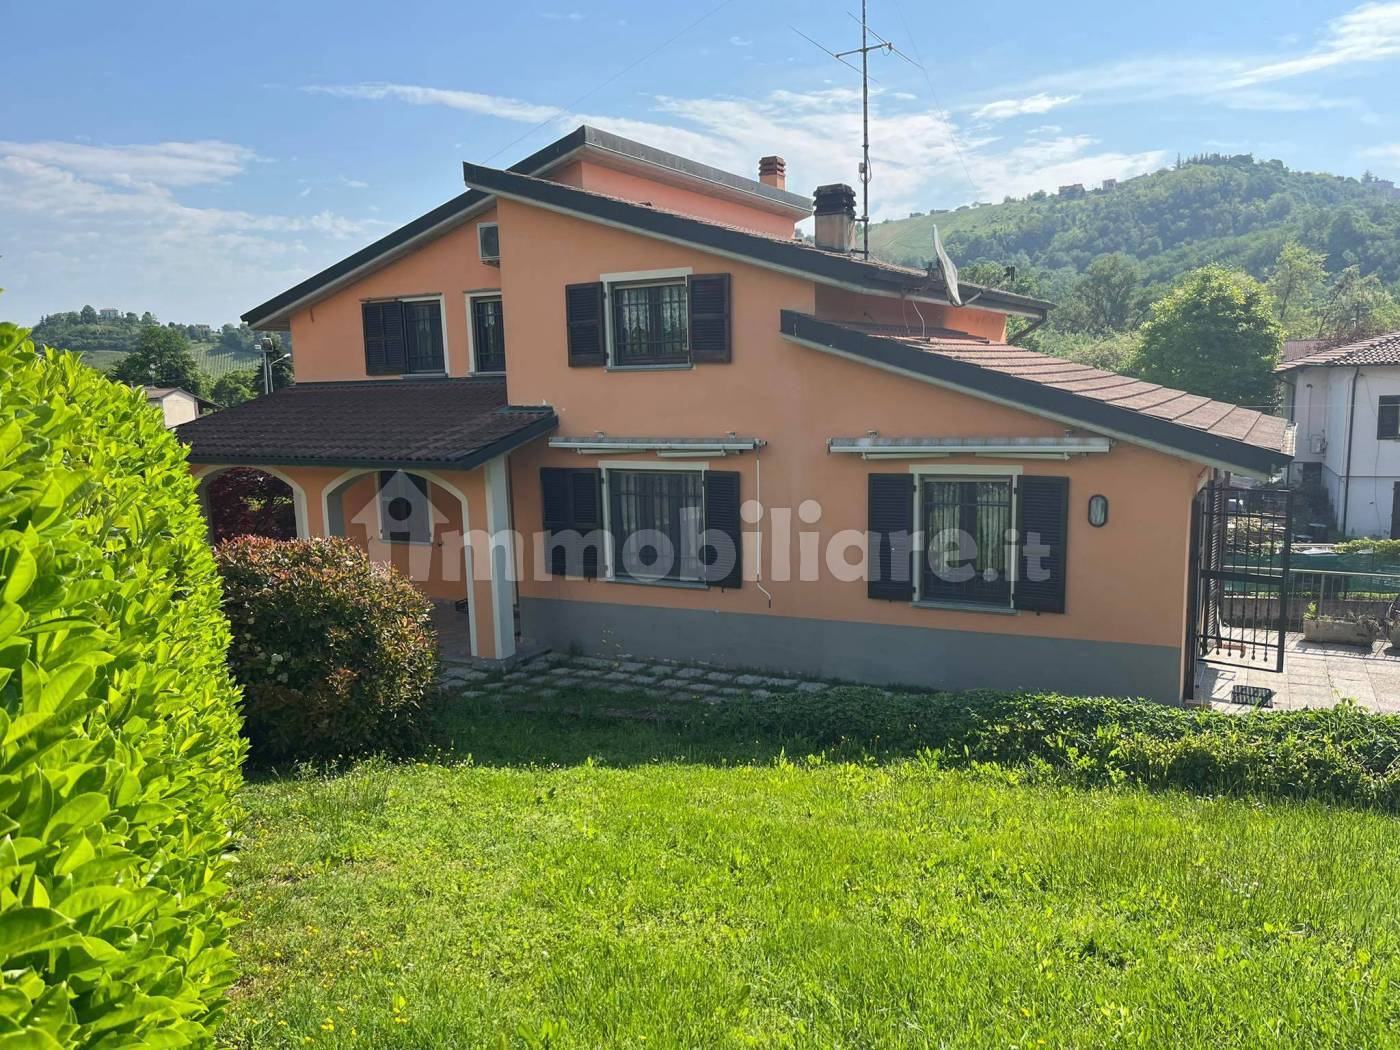 Villa in vendita a Canneto Pavese, 7 locali, zona Località: RONCOLE, prezzo € 190.000 | PortaleAgenzieImmobiliari.it